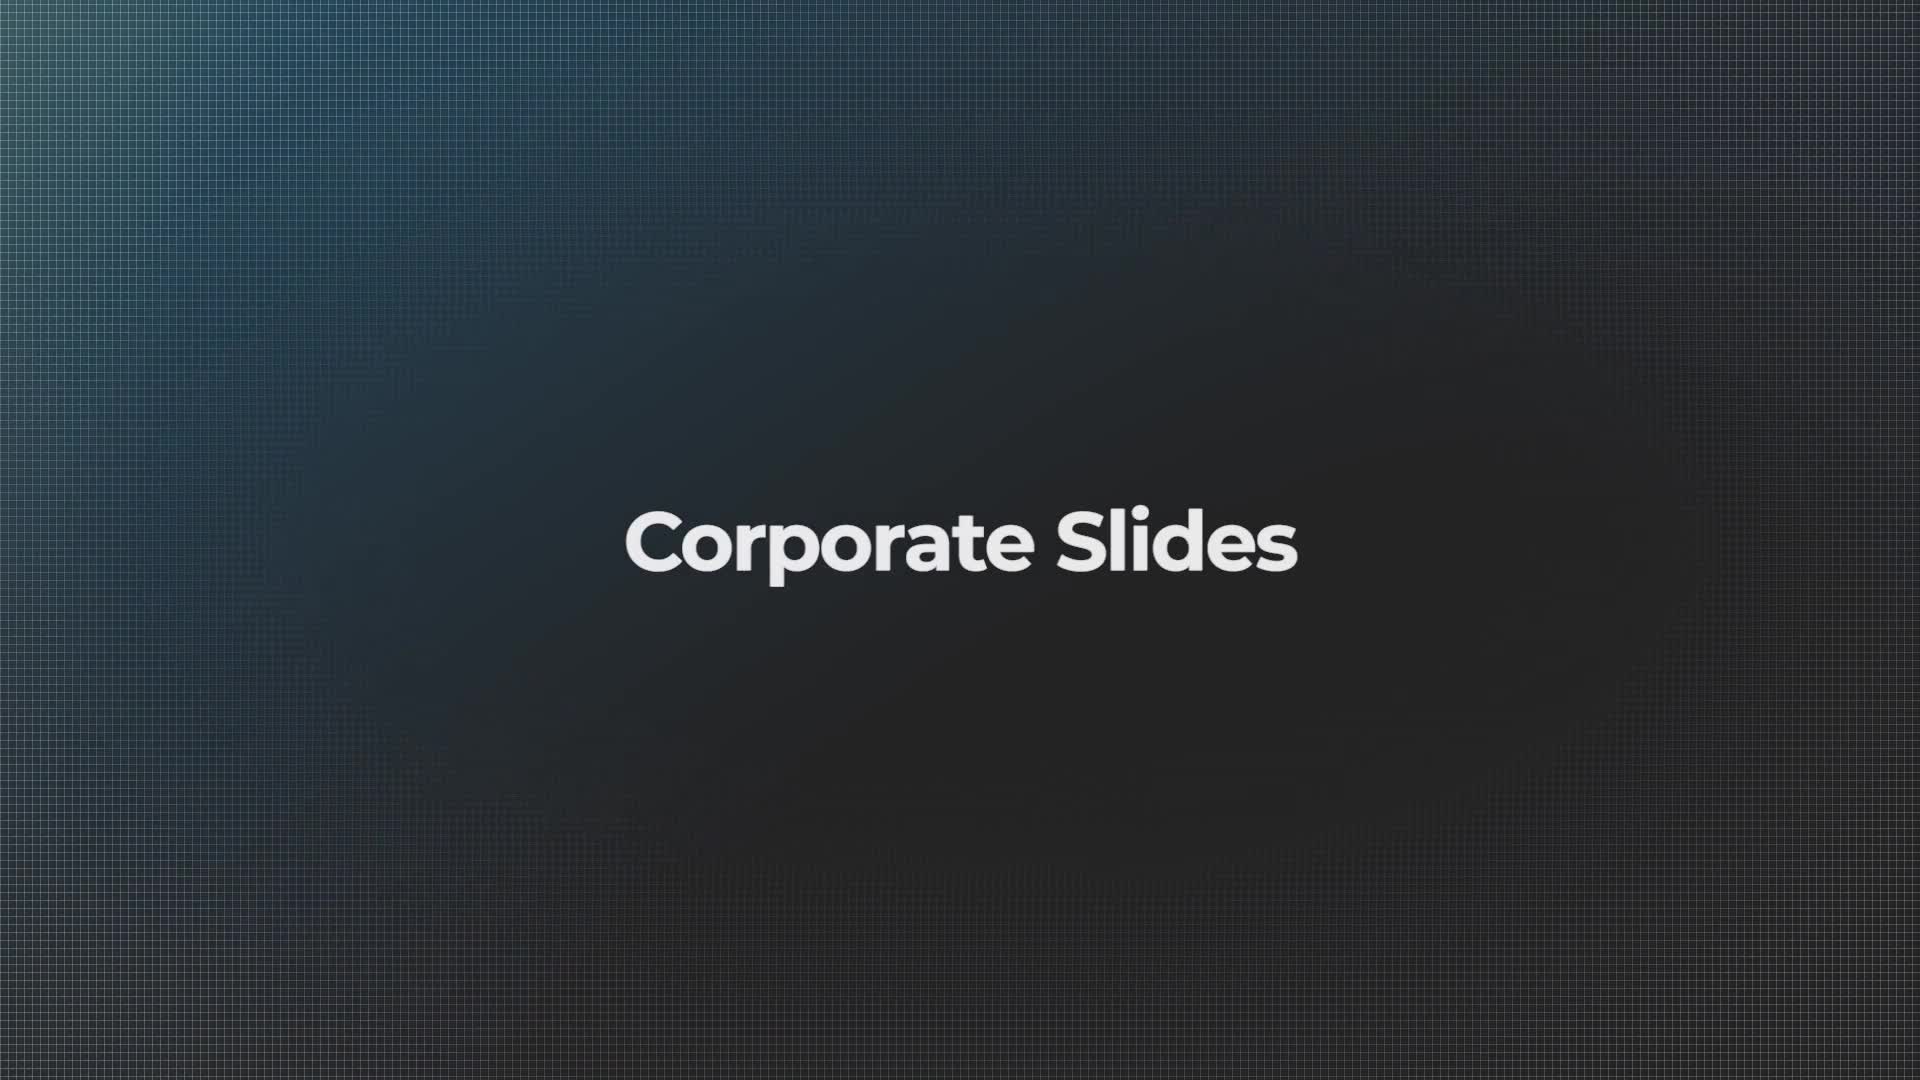 Corporate Slides Videohive 21884509 Premiere Pro Image 1